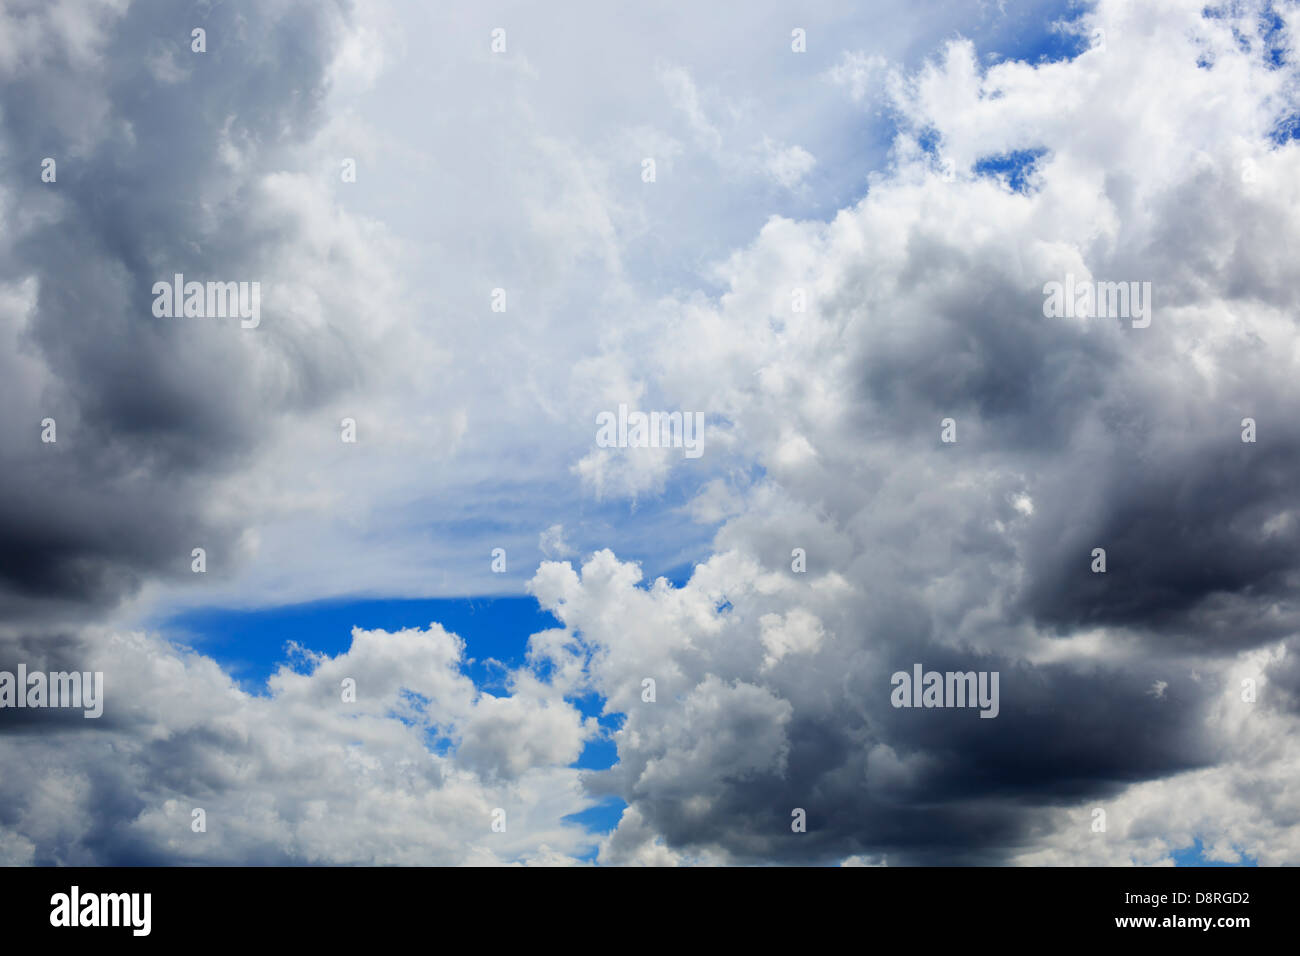 Sommer-Gewitterwolken bilden sich Overhead - Midwest United States. Stockfoto